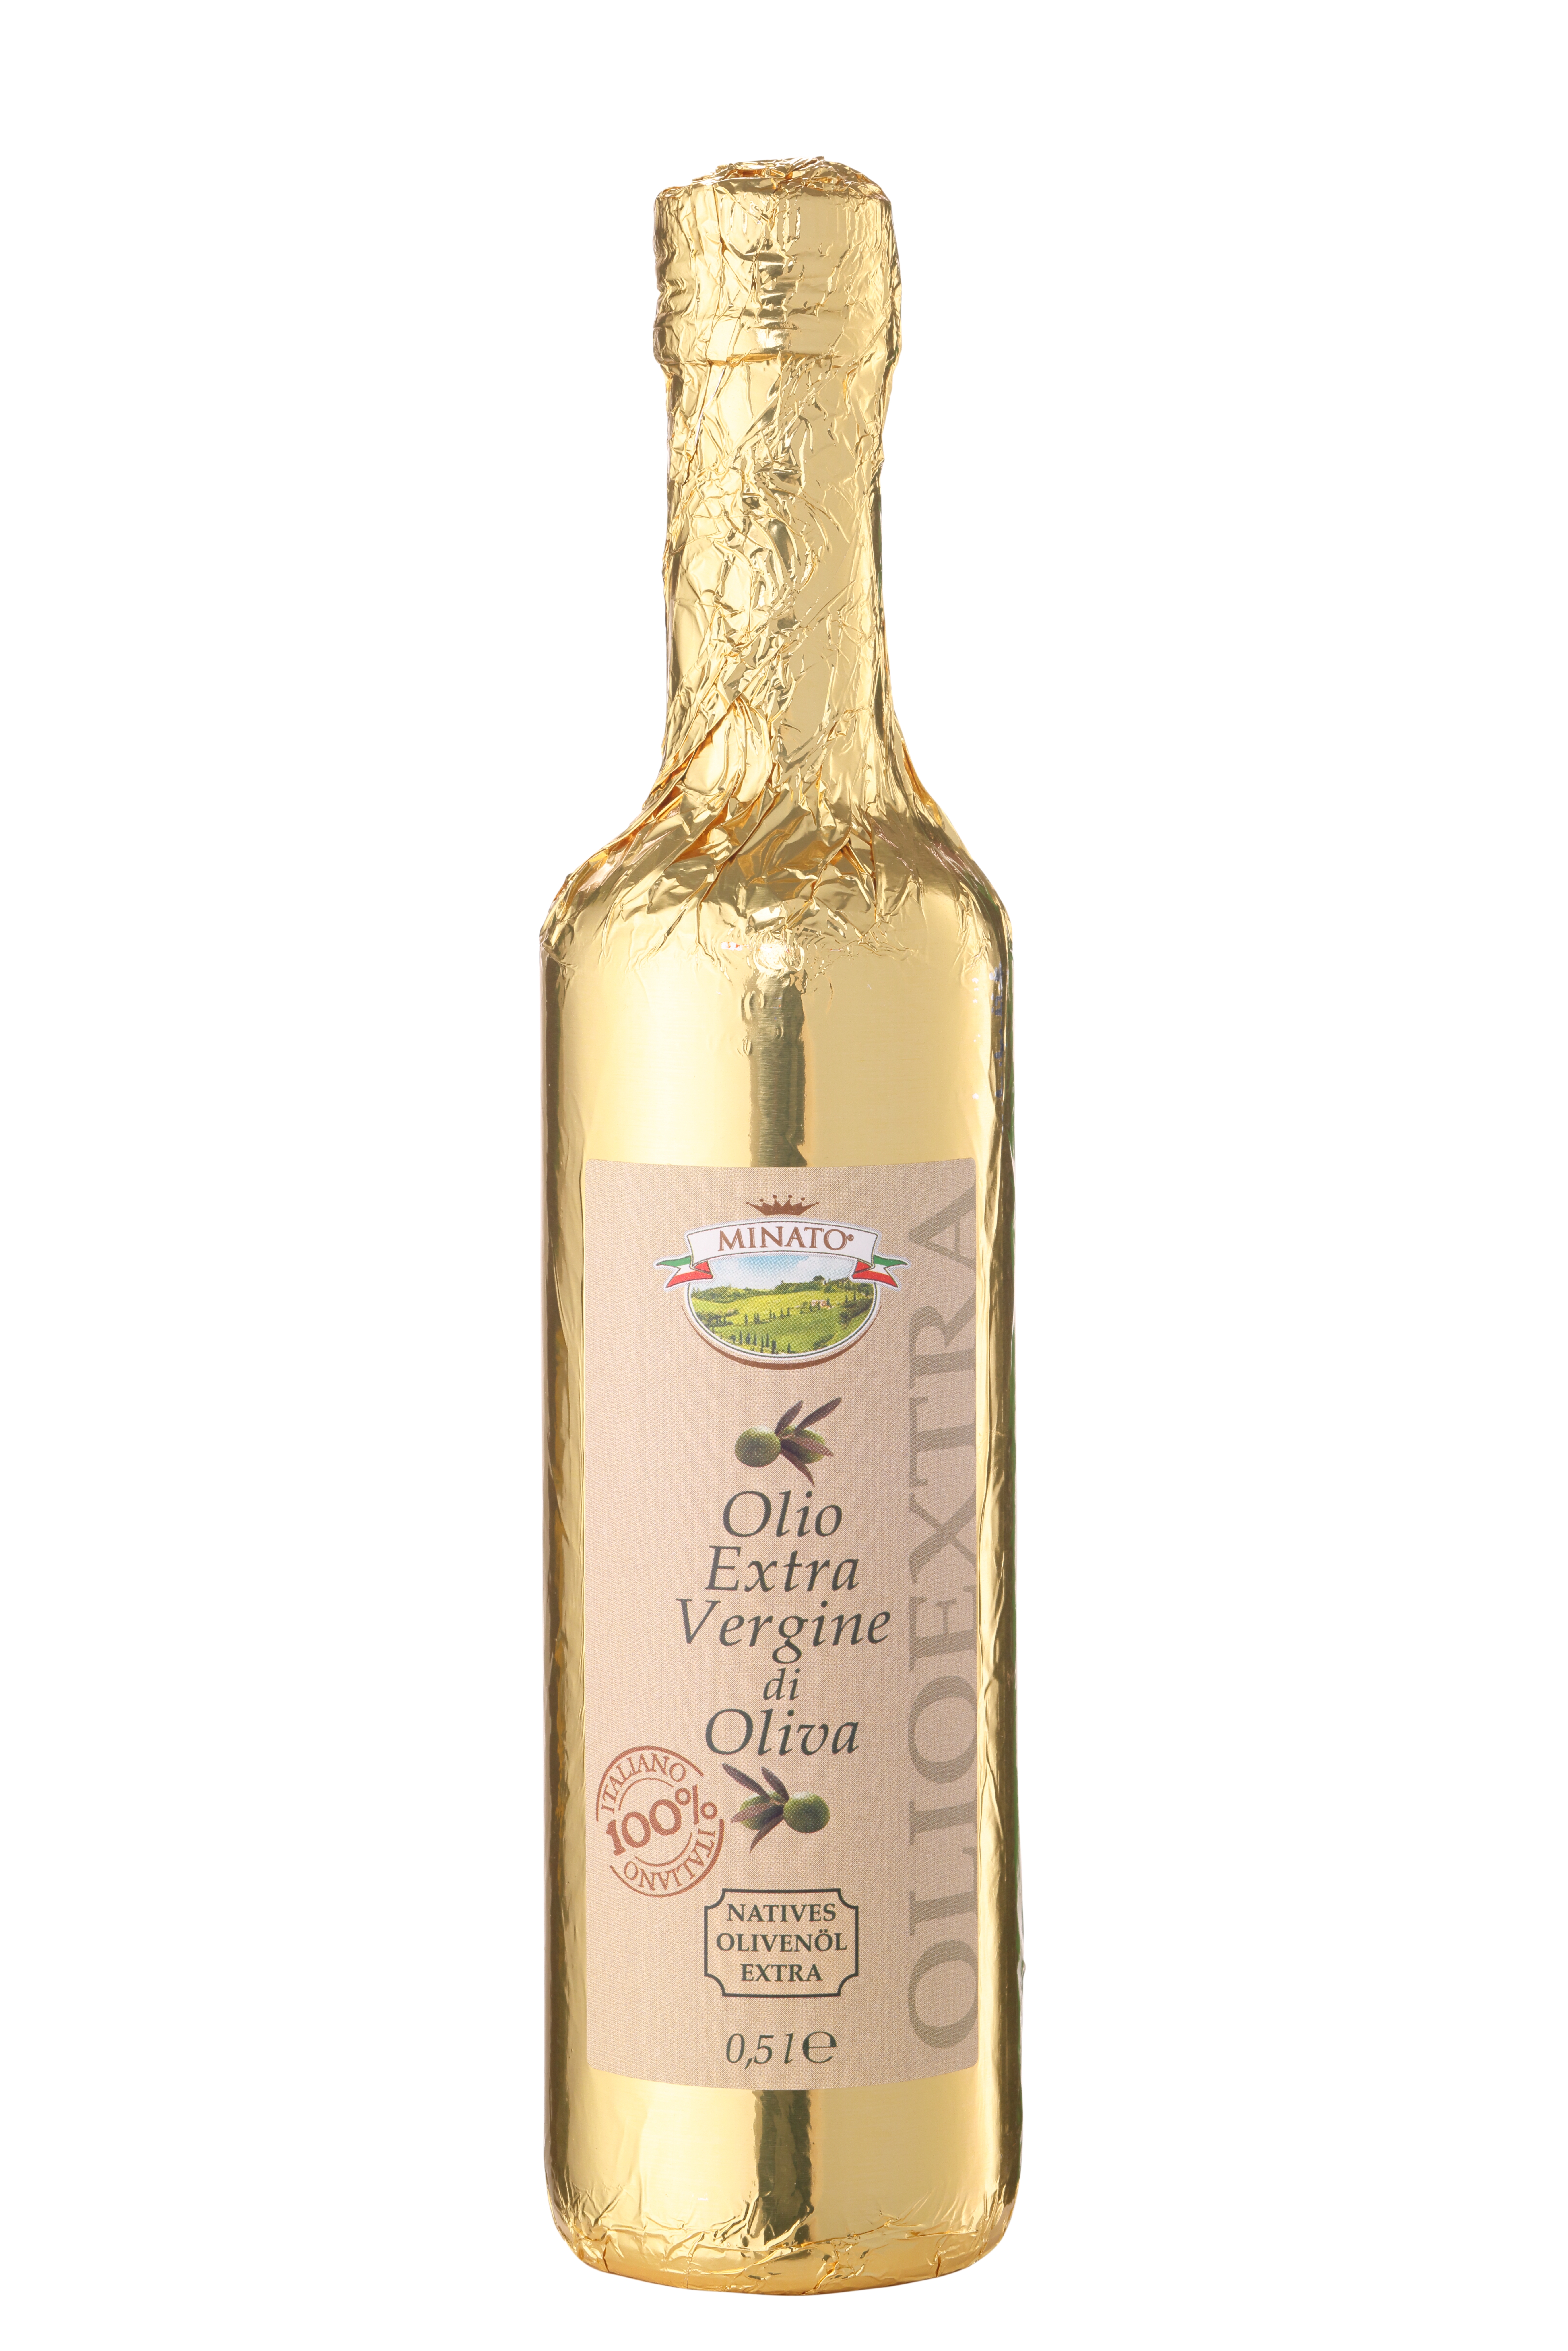 Minato, Natives Olivenöl Extra "Gold", 100% Italienisch, 500ml